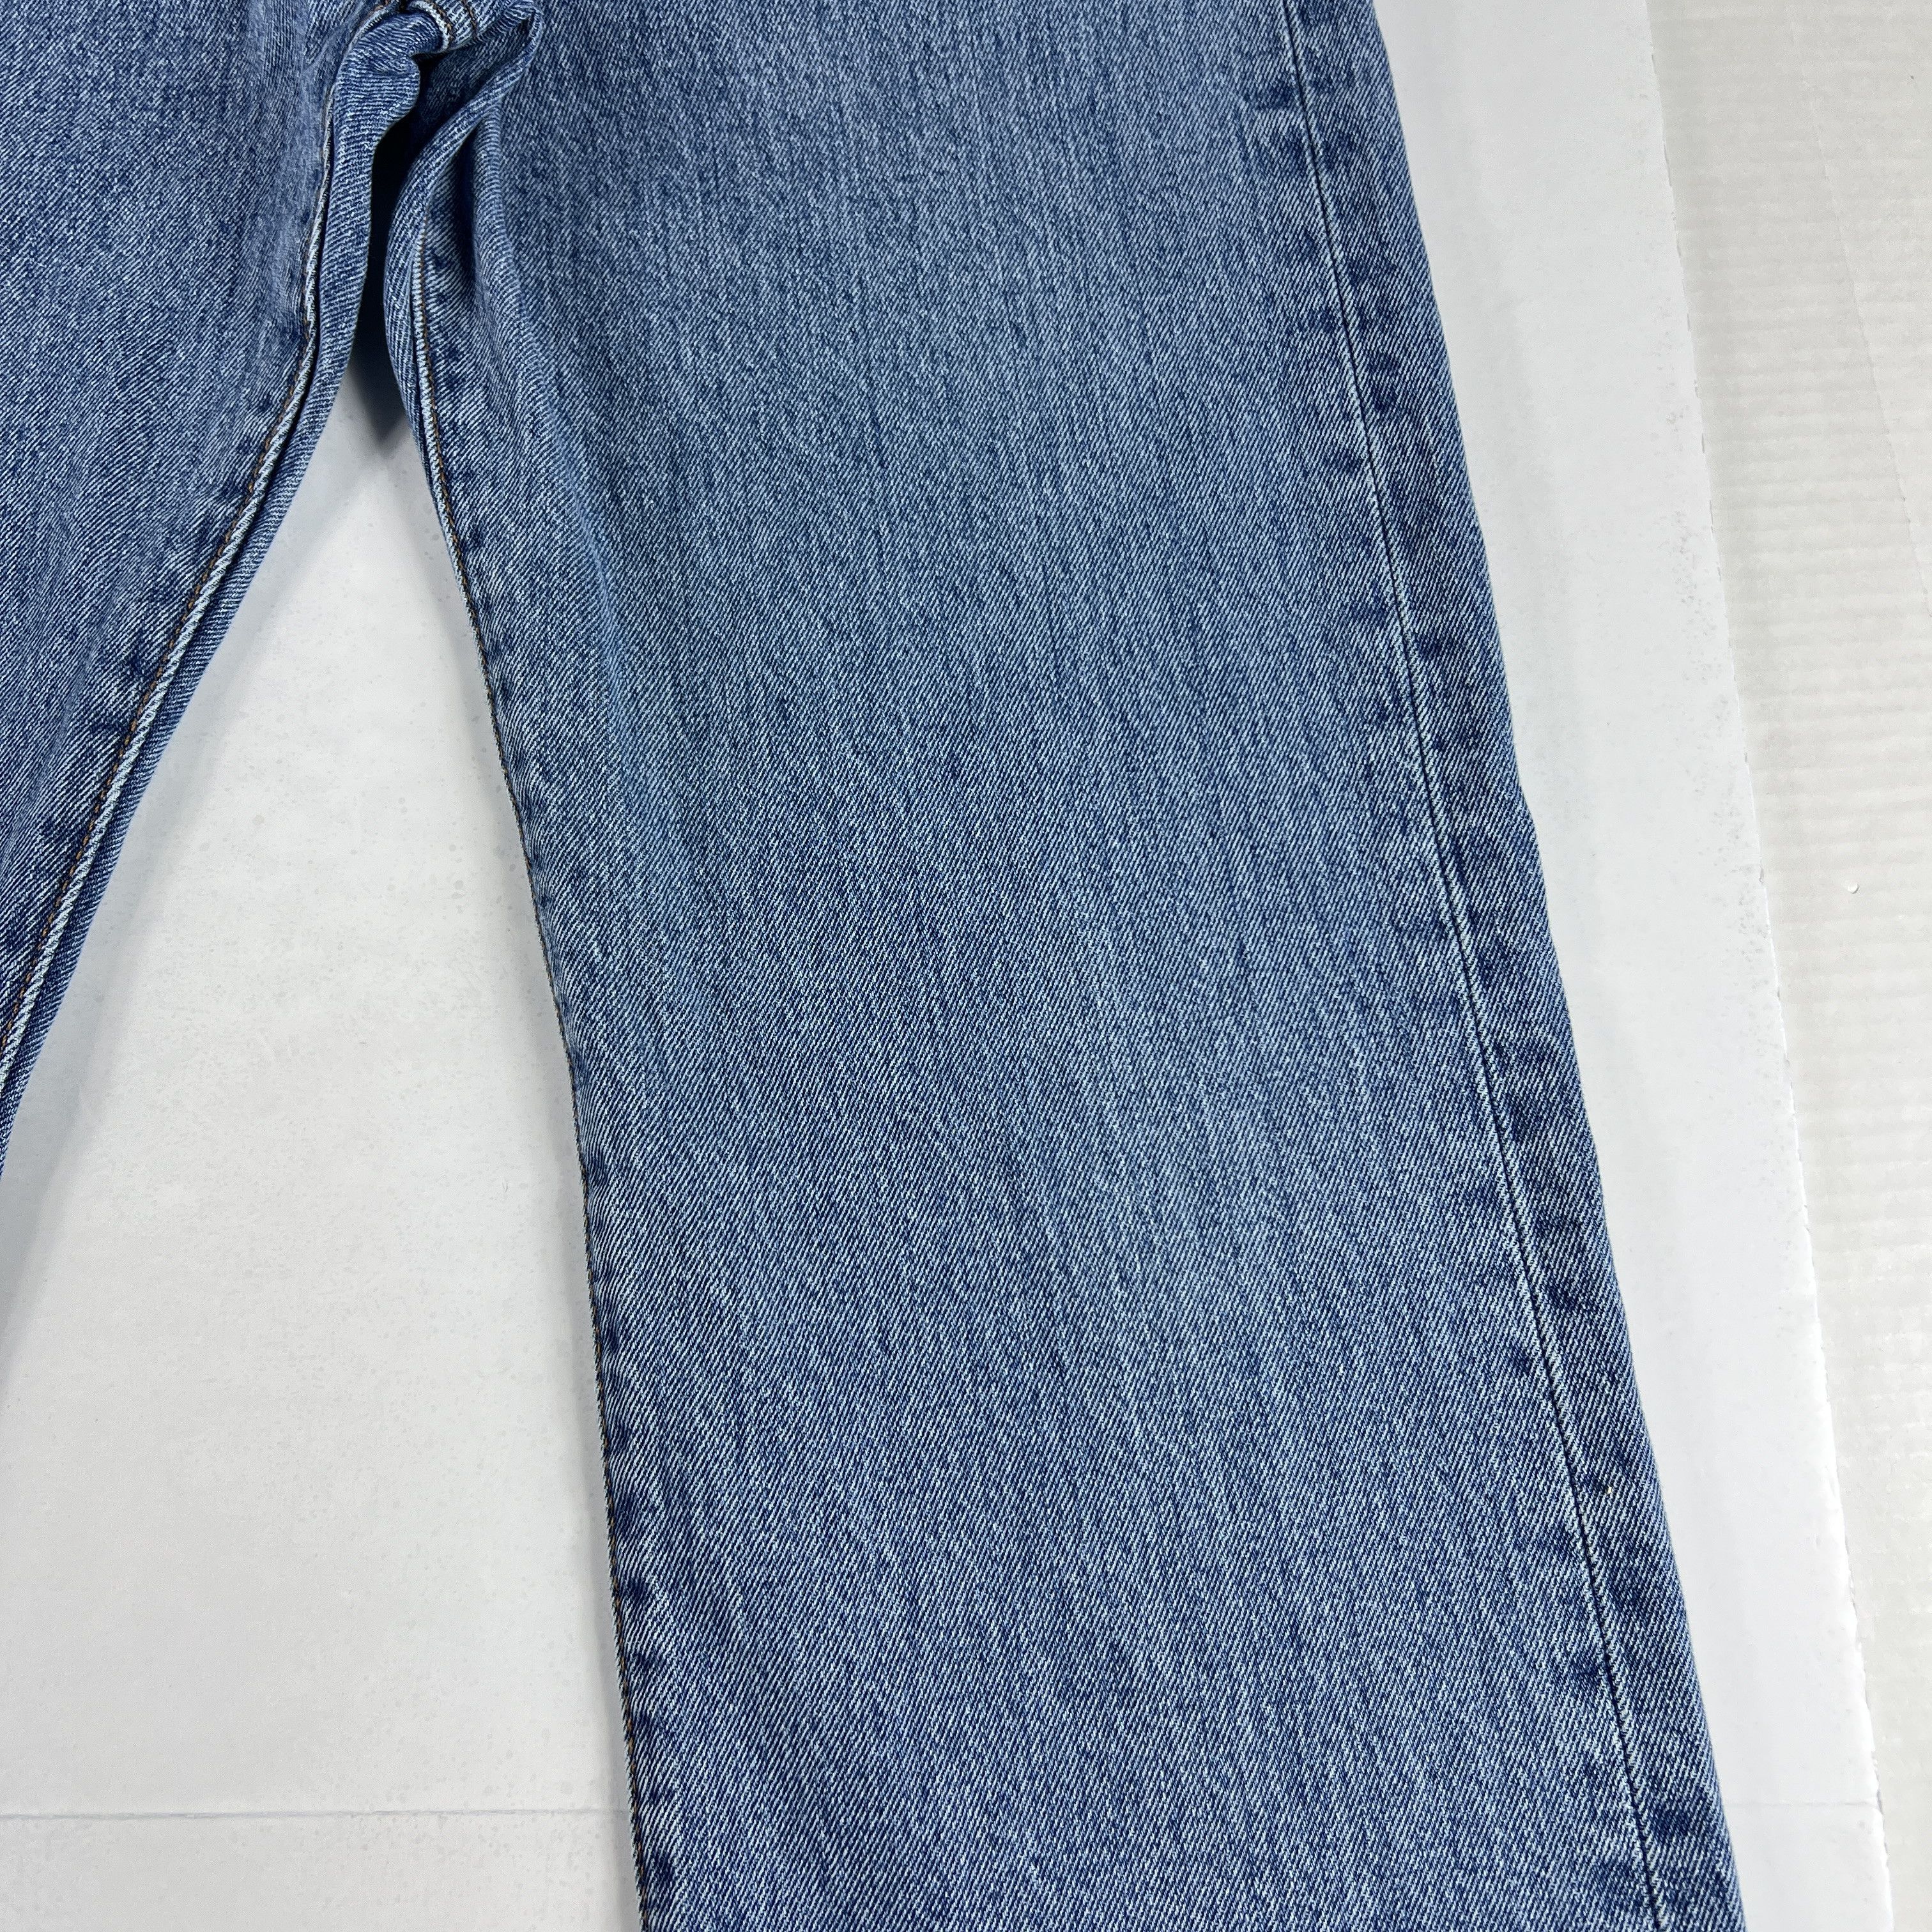 Levi's Levi's Jeans 501 XX Original Straight Blue Cotton Denim Size US 33 - 3 Thumbnail